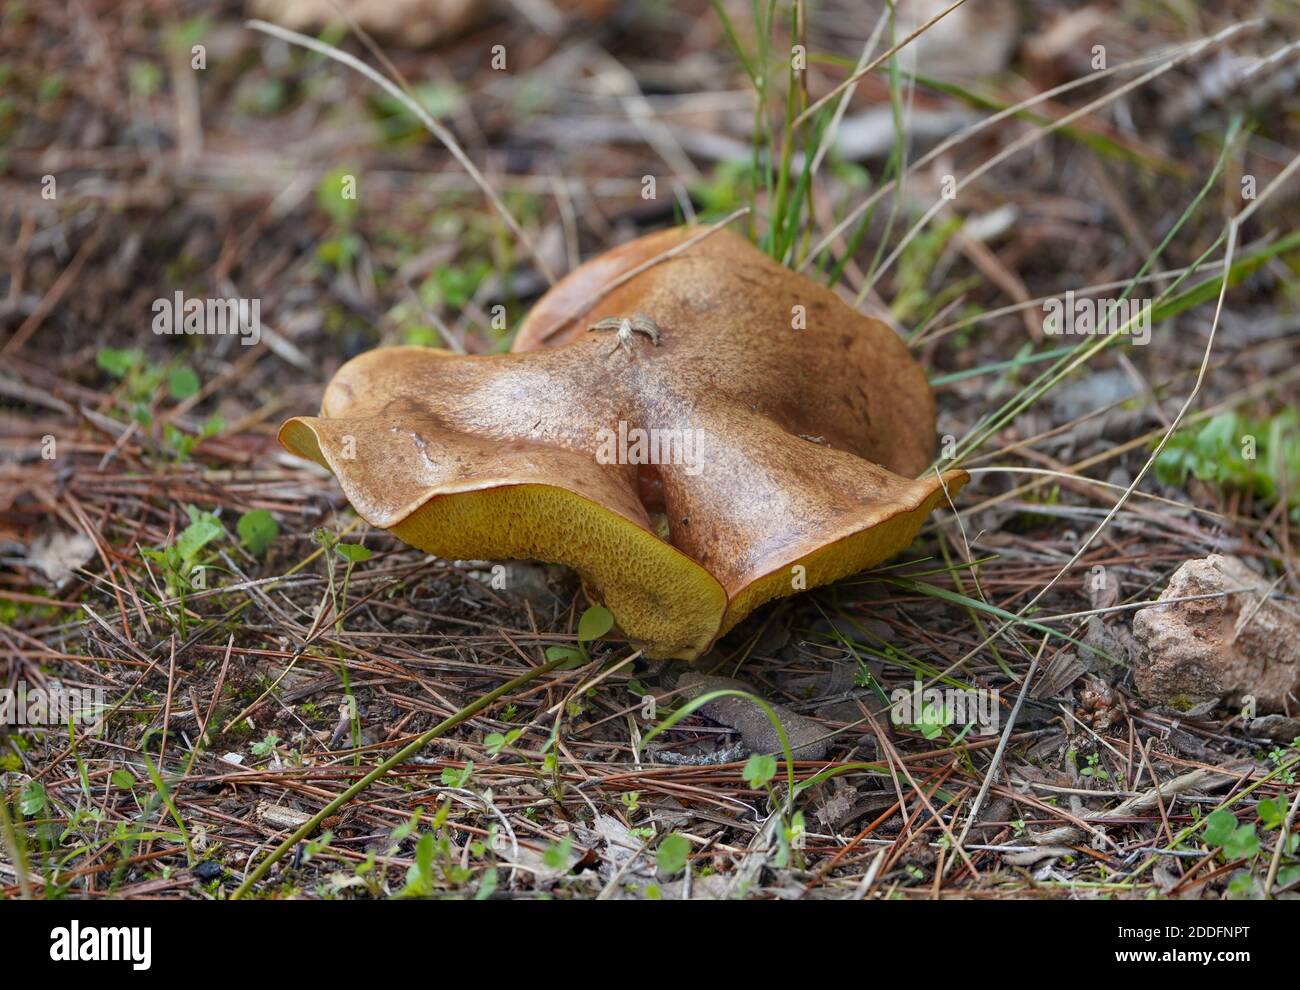 Suillus collinitus, edible mushroom in forest, Andalucia, Spain. Stock Photo